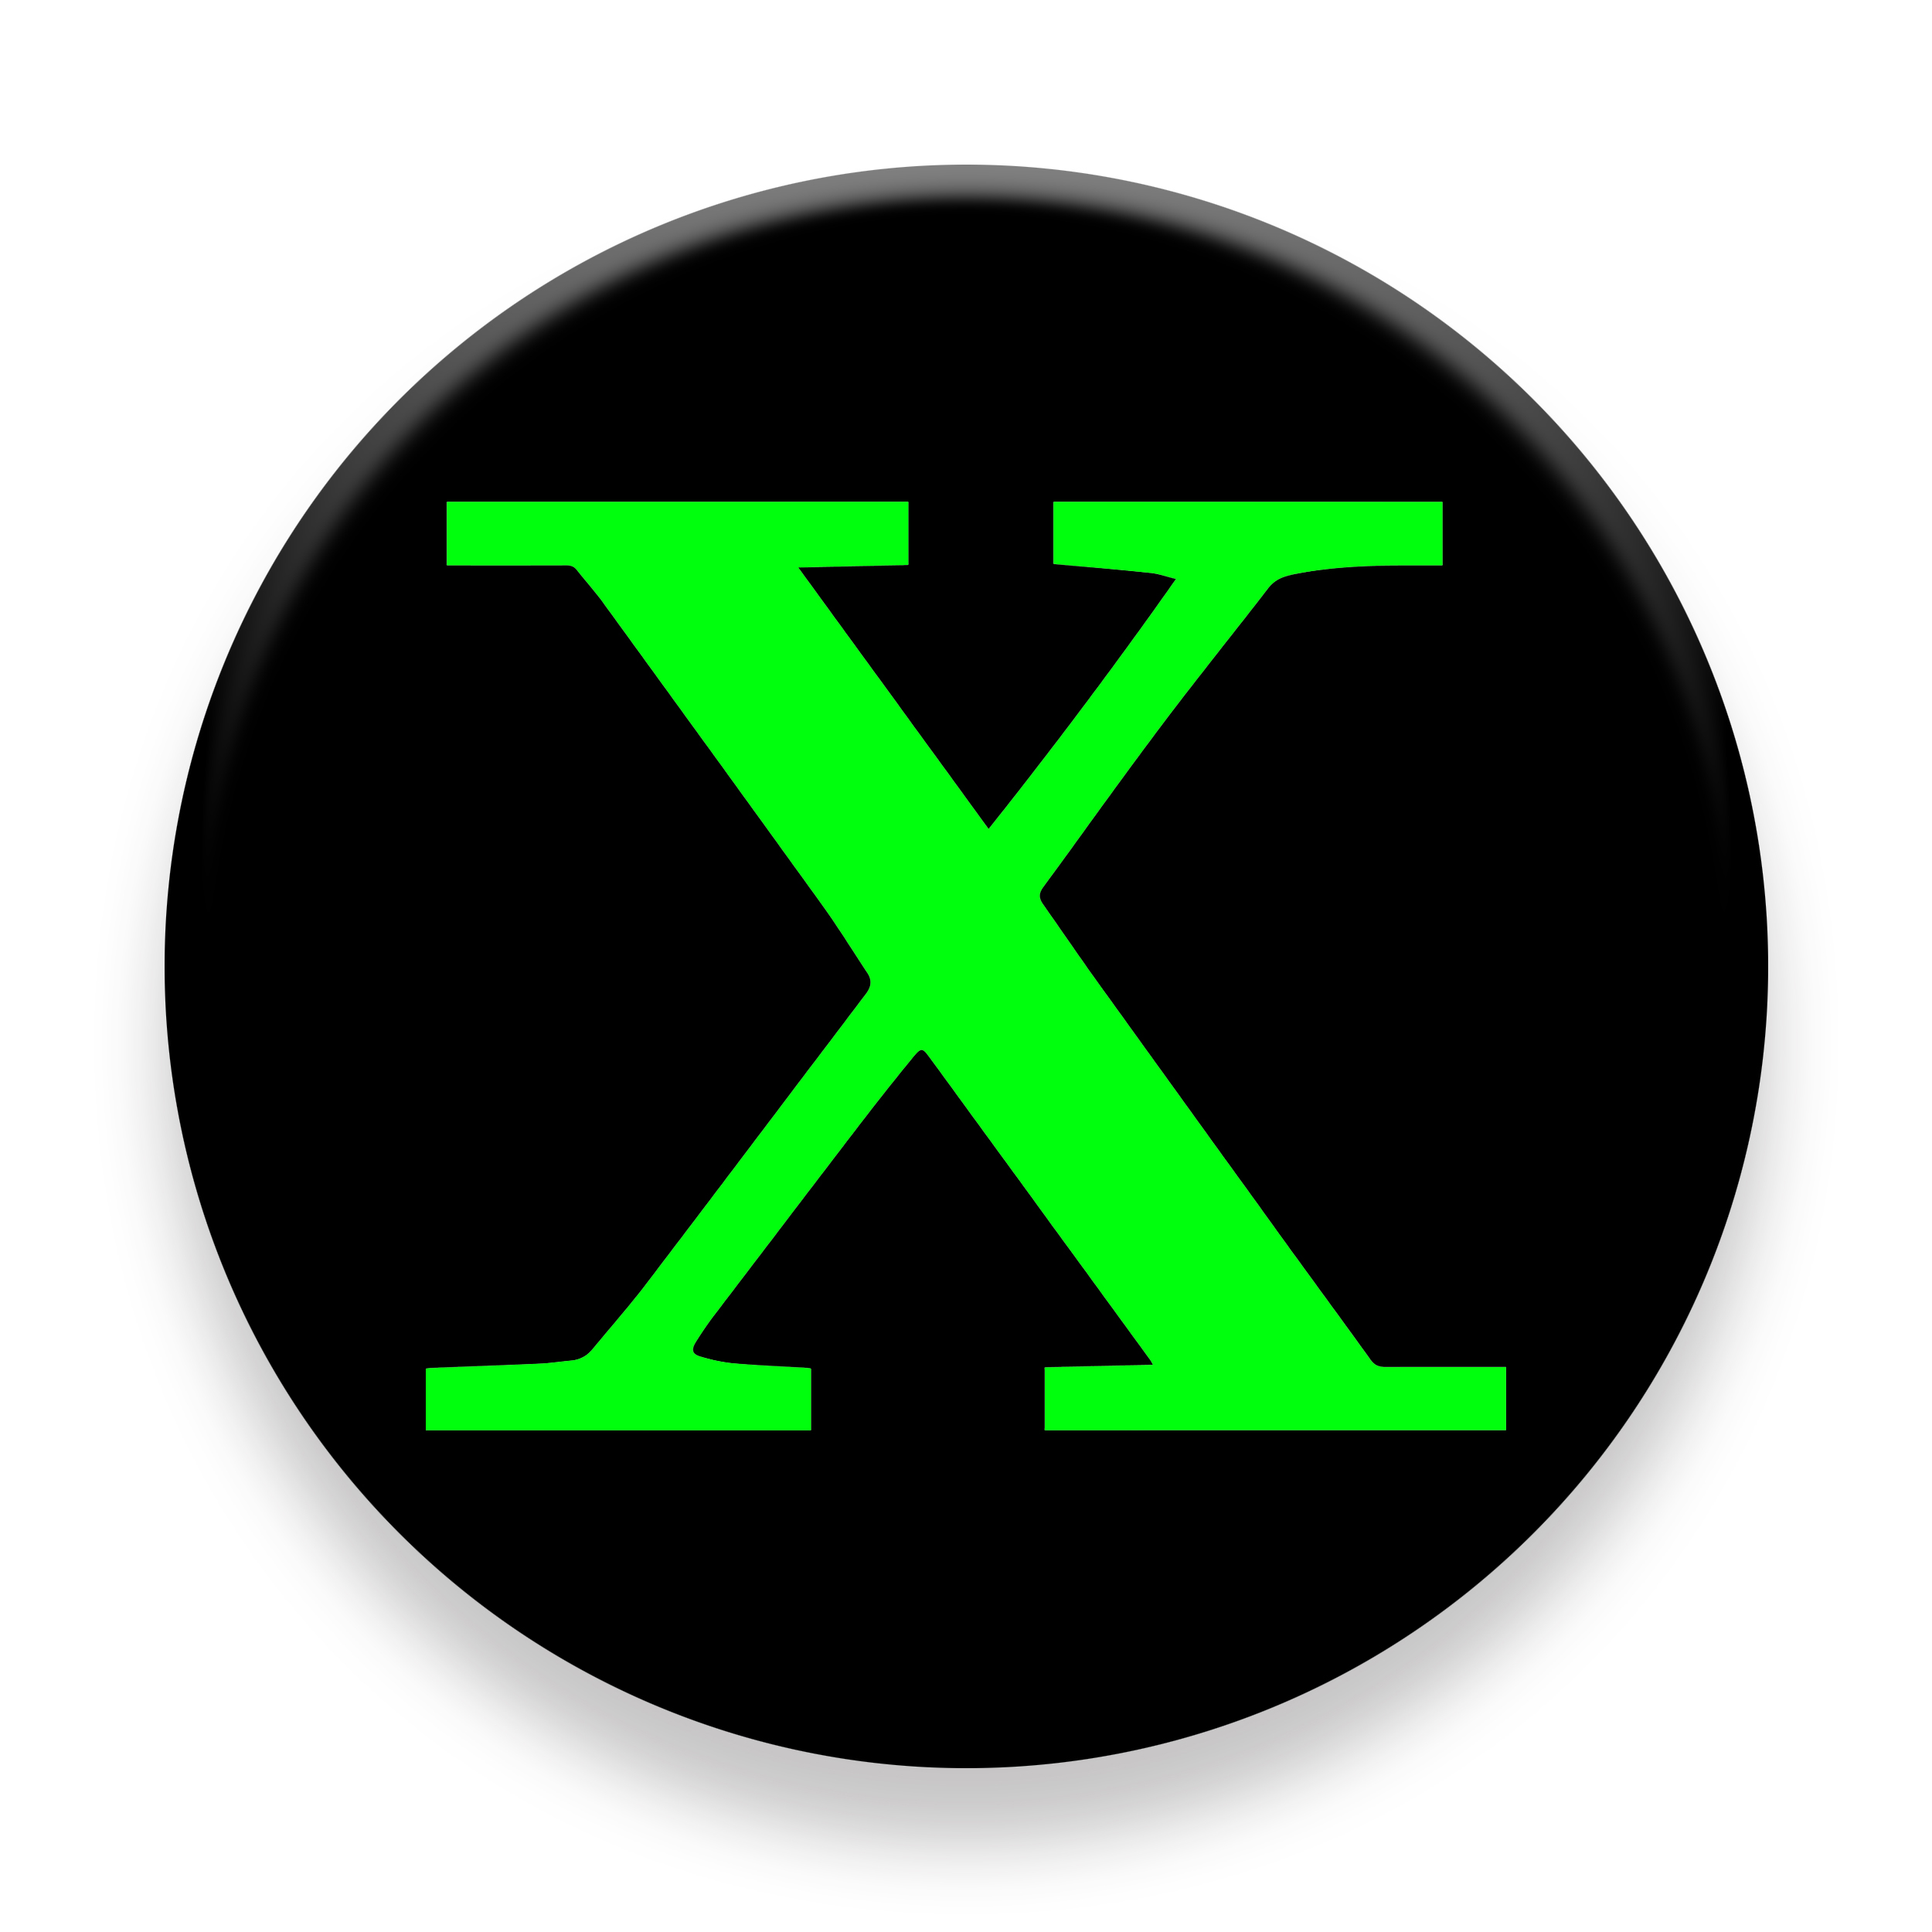 برچسب موبایل مای سیحان مدل X icon مناسب برای پایه نگهدارنده مغناطیسی